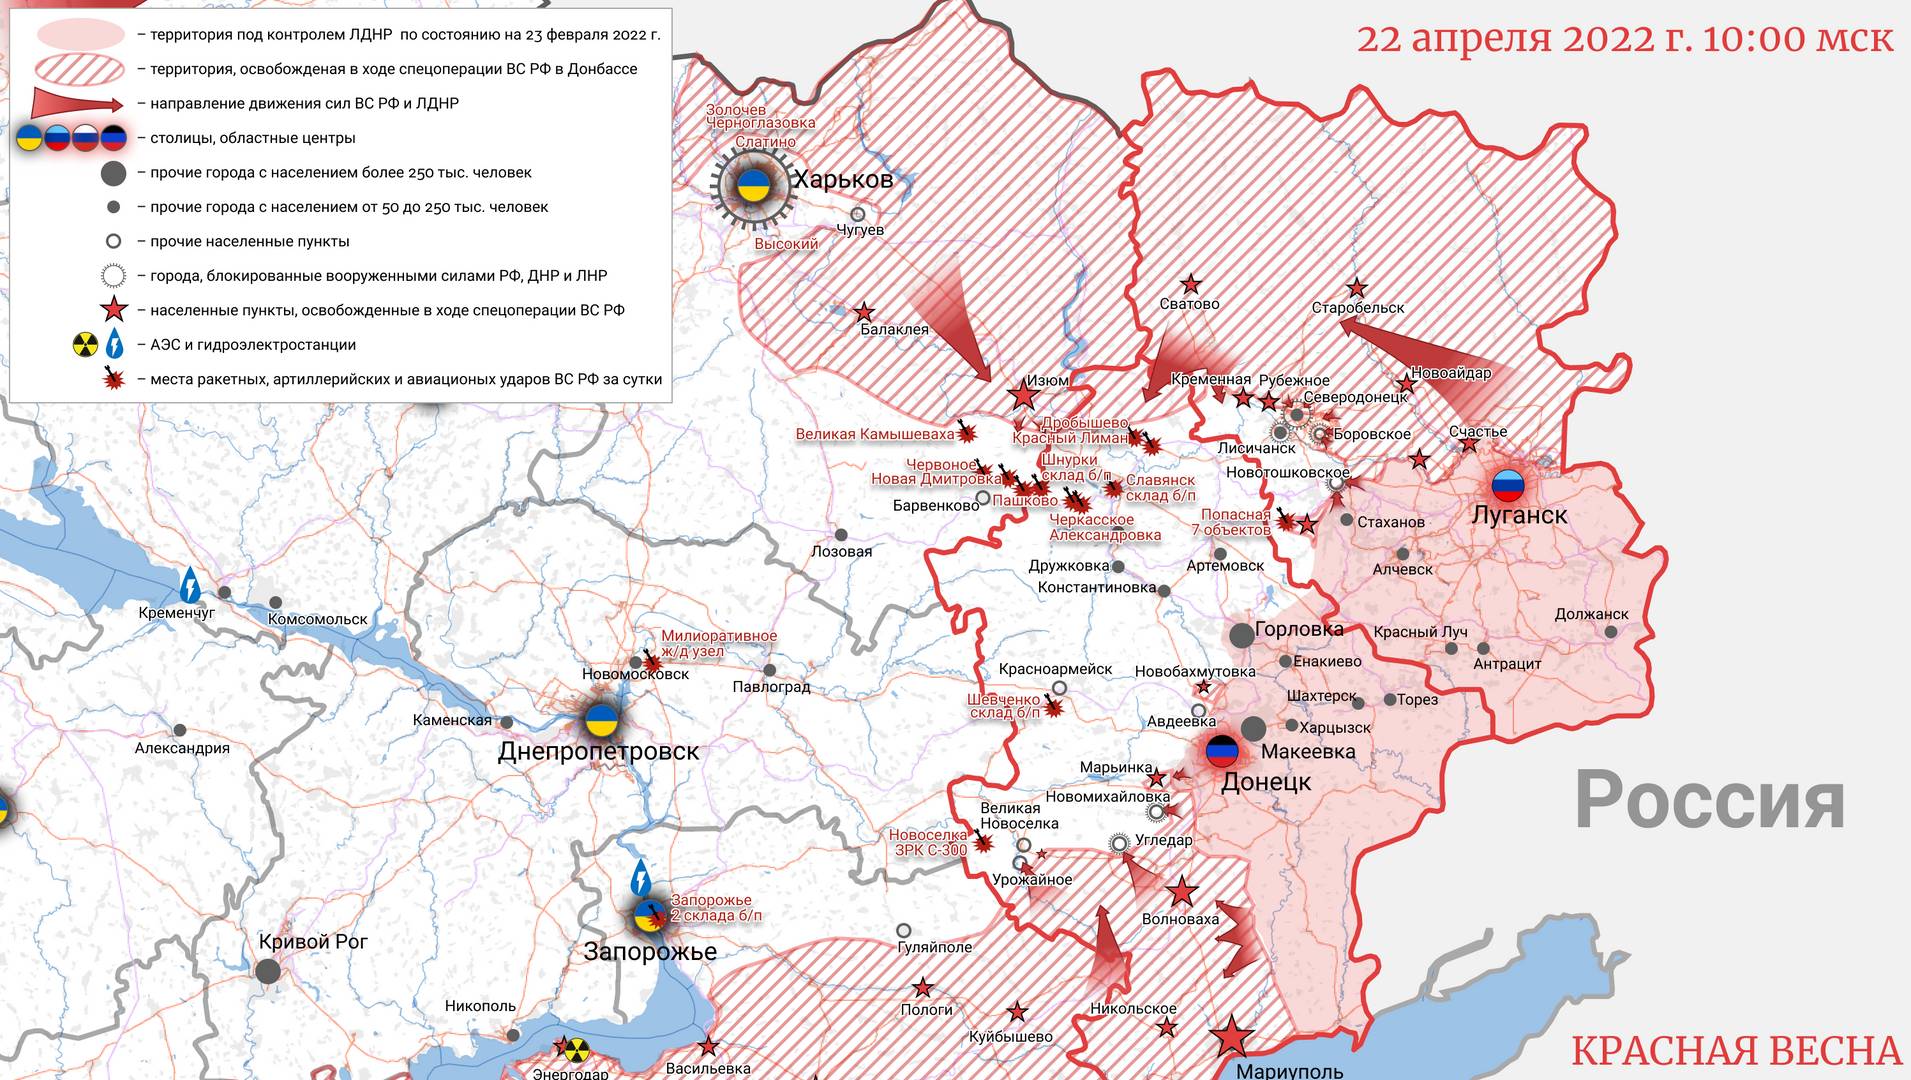 Карта Украины 22 апреля 2022 года 10:00 © ИА Красная Весна 